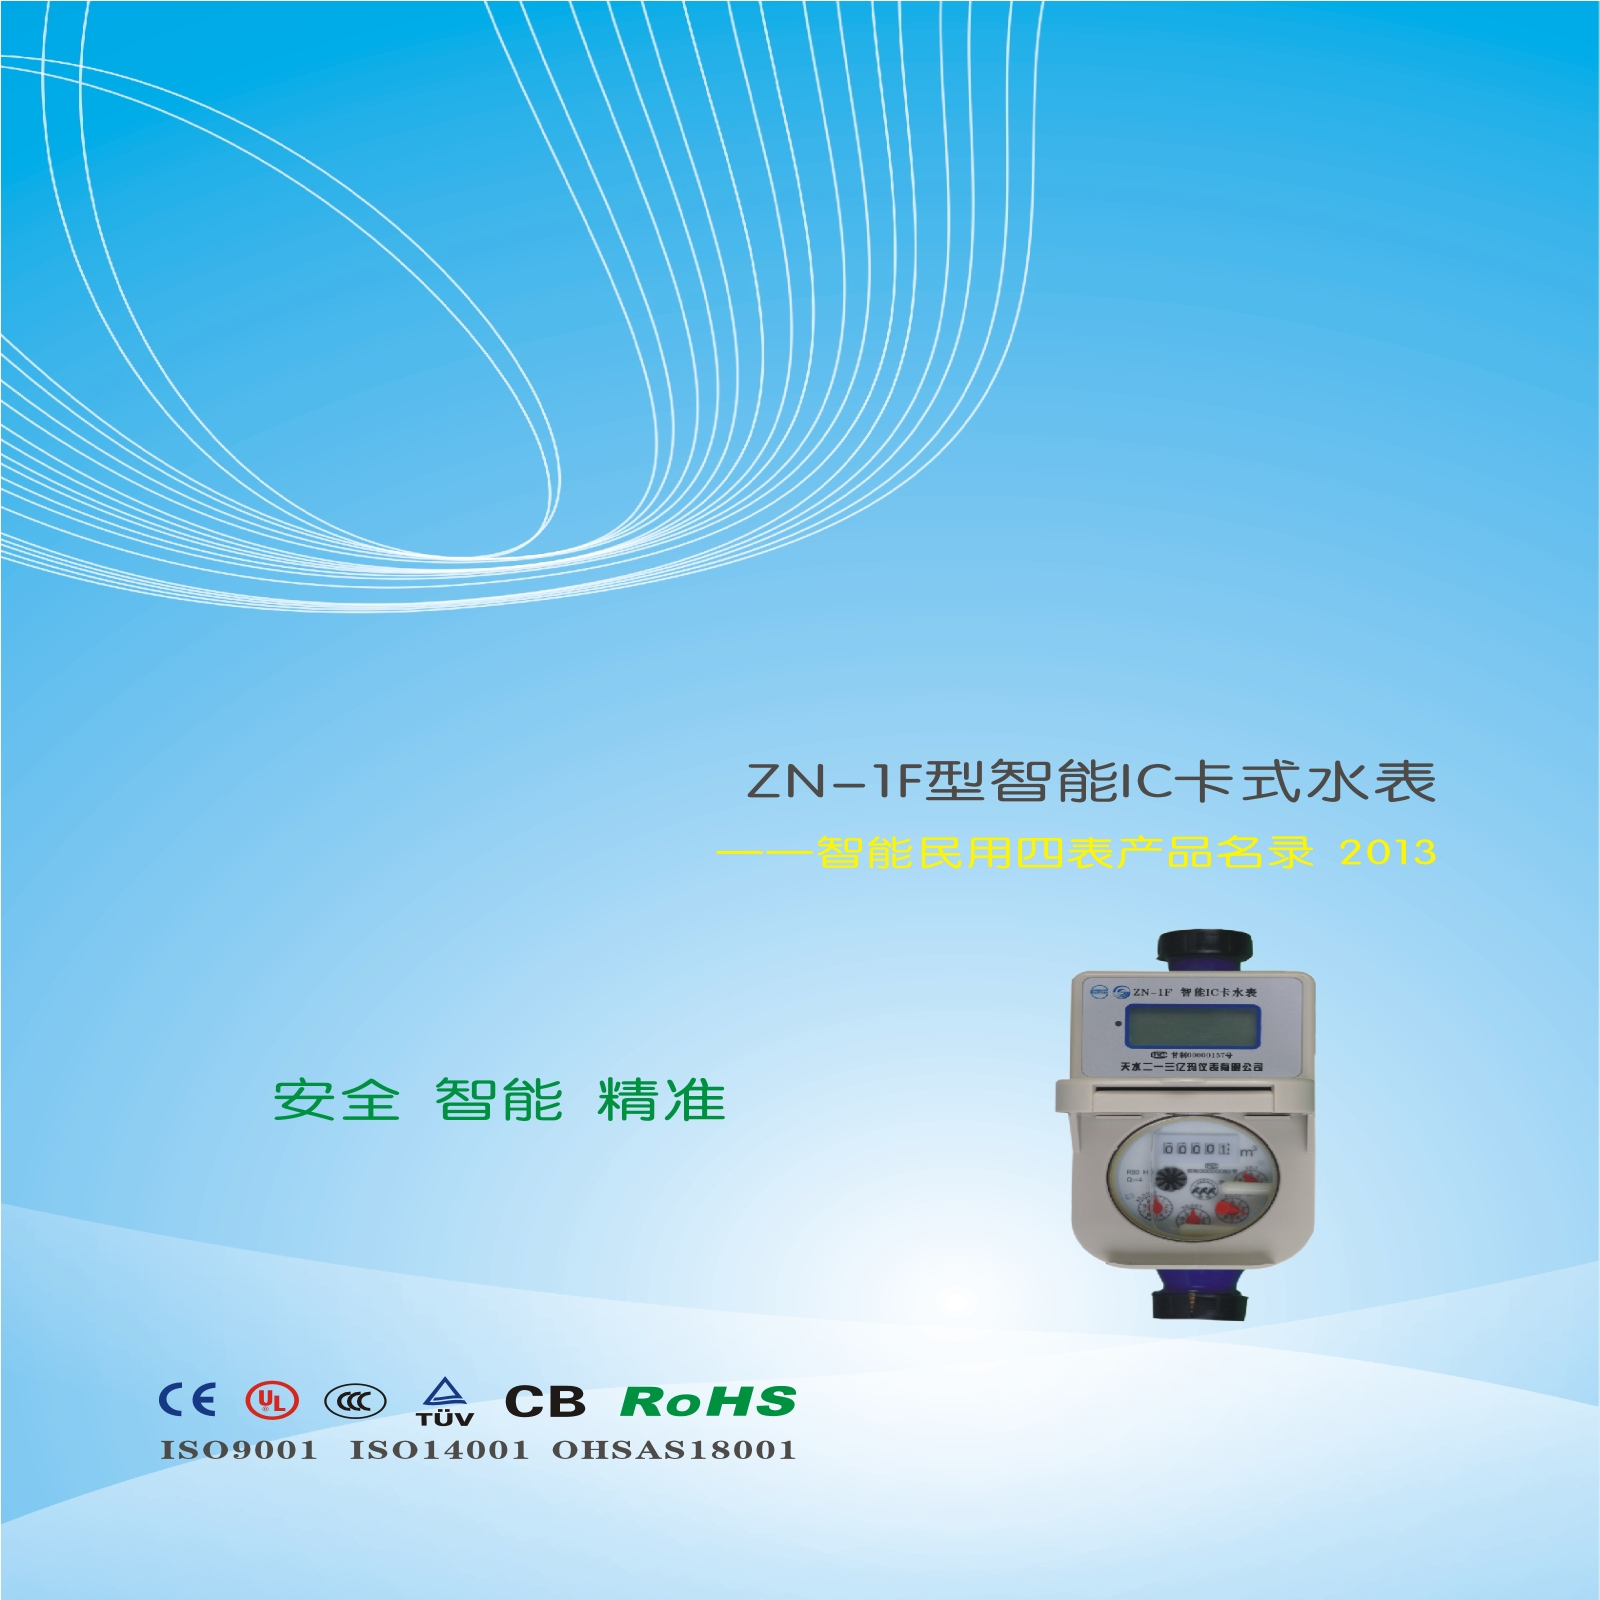 ZN-1F型智能IC卡阀控式水表